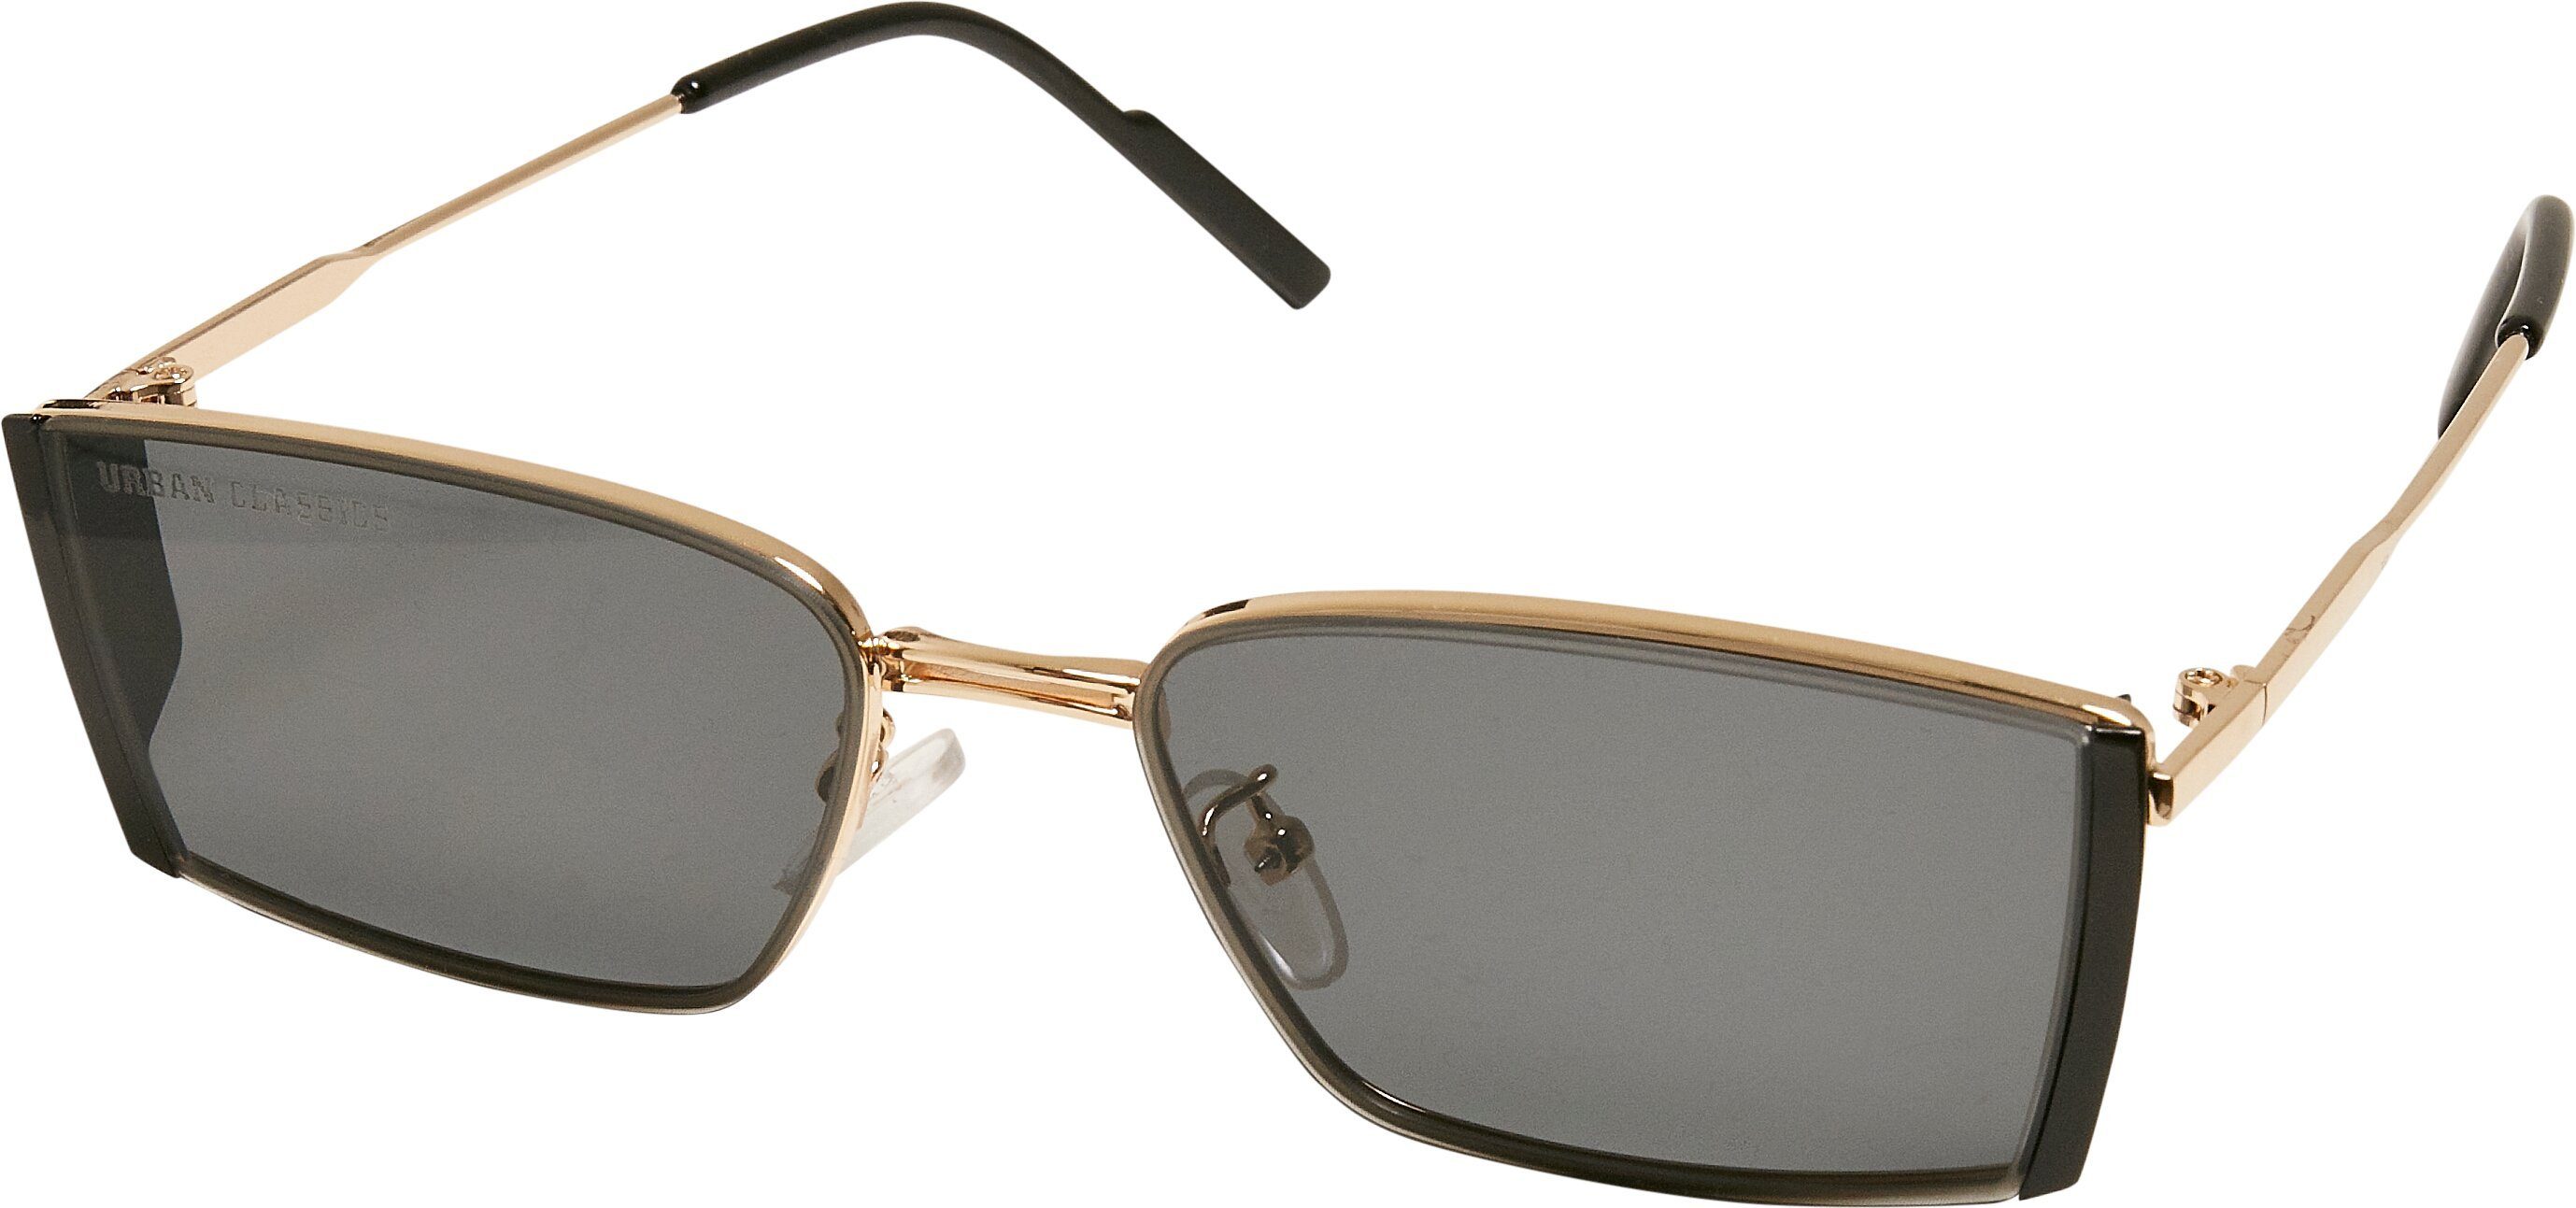 CLASSICS Ohio Sunglasses Unisex Sonnenbrille black/gold URBAN